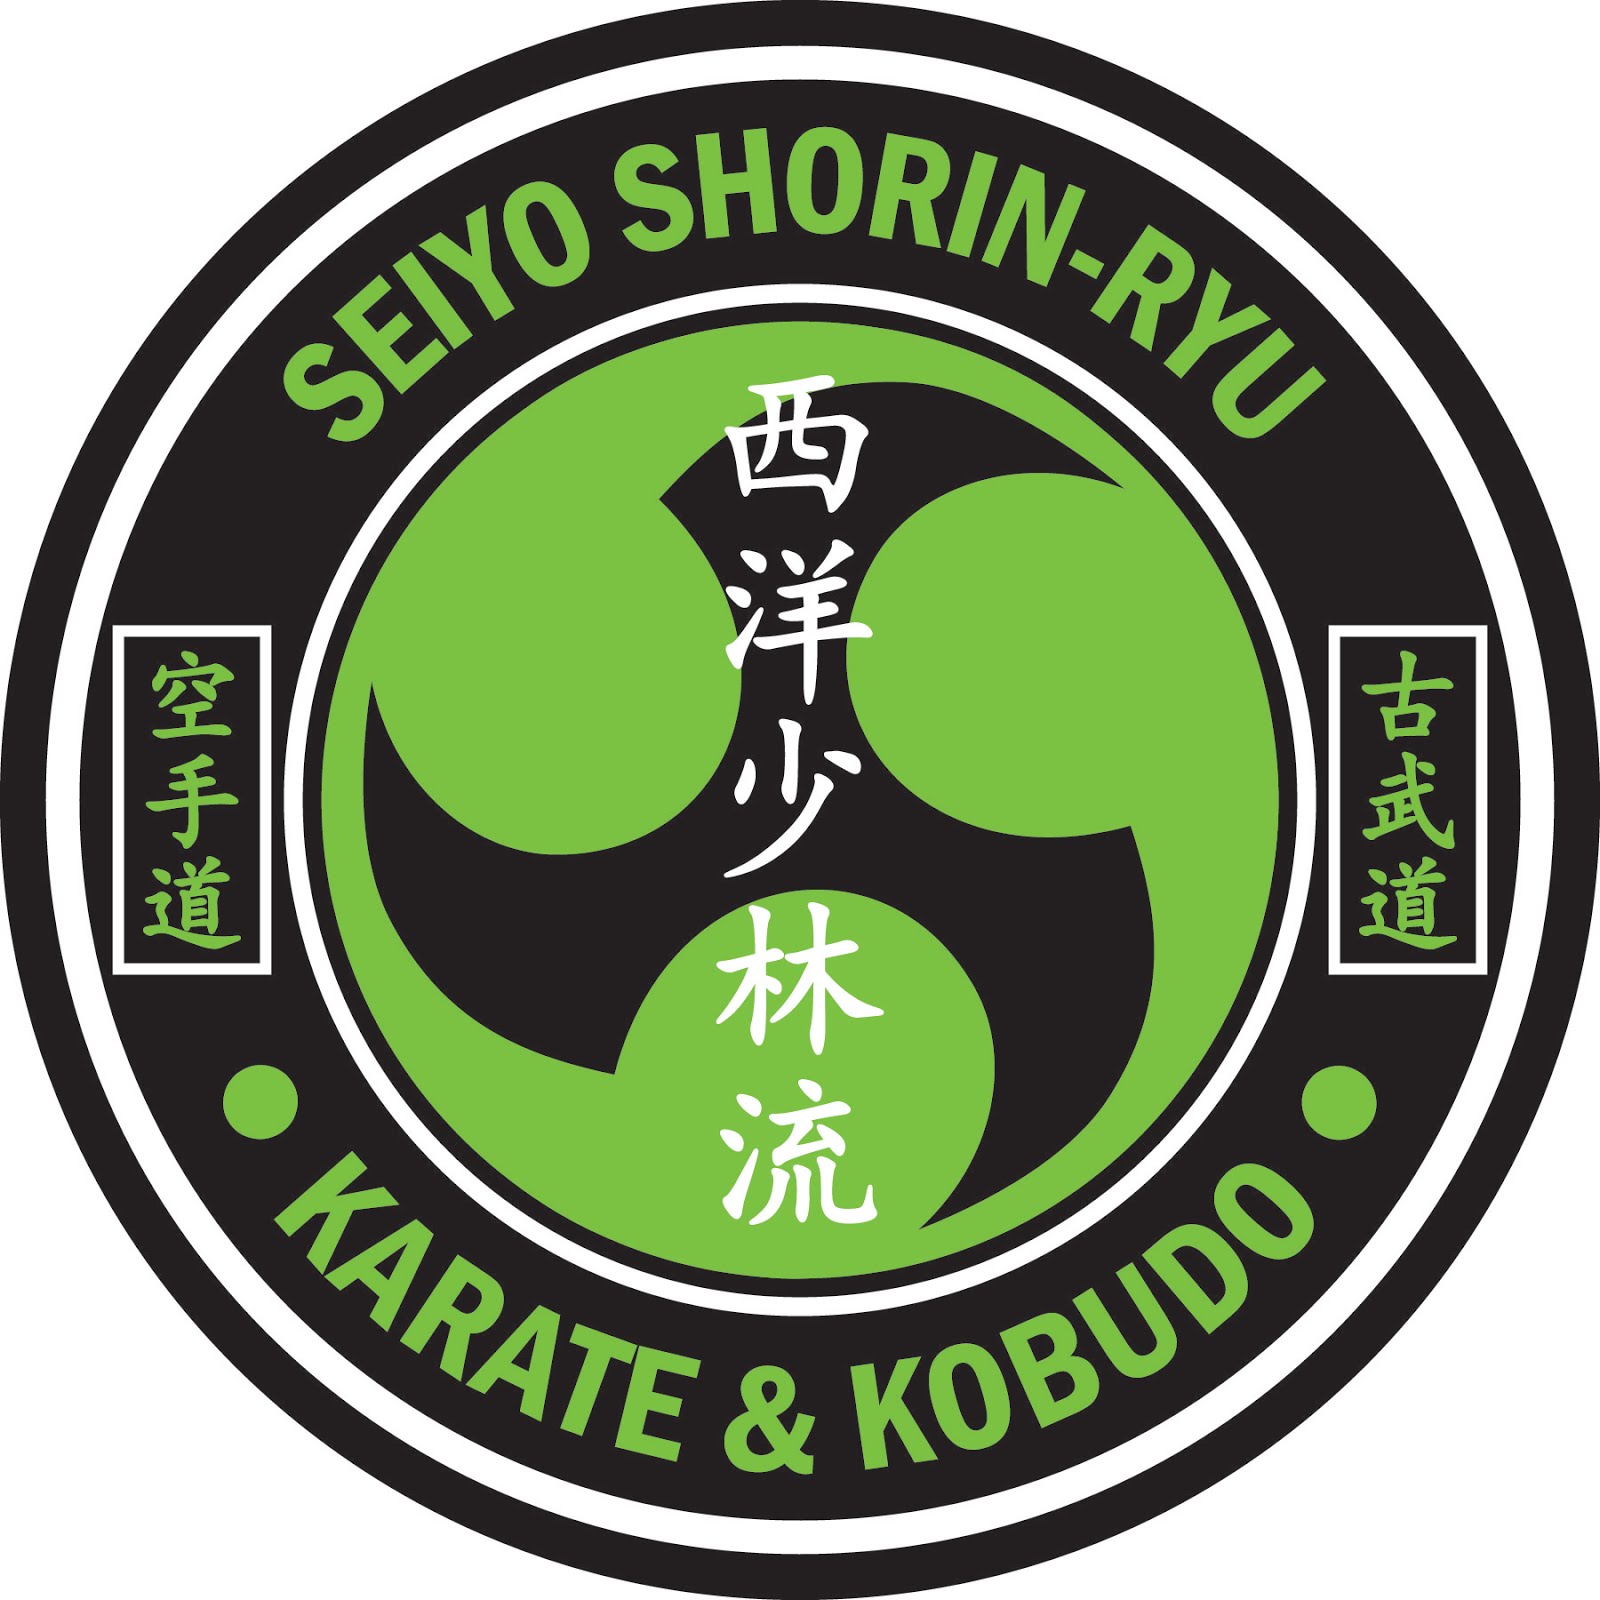 Seiyo Shorin-Ryu